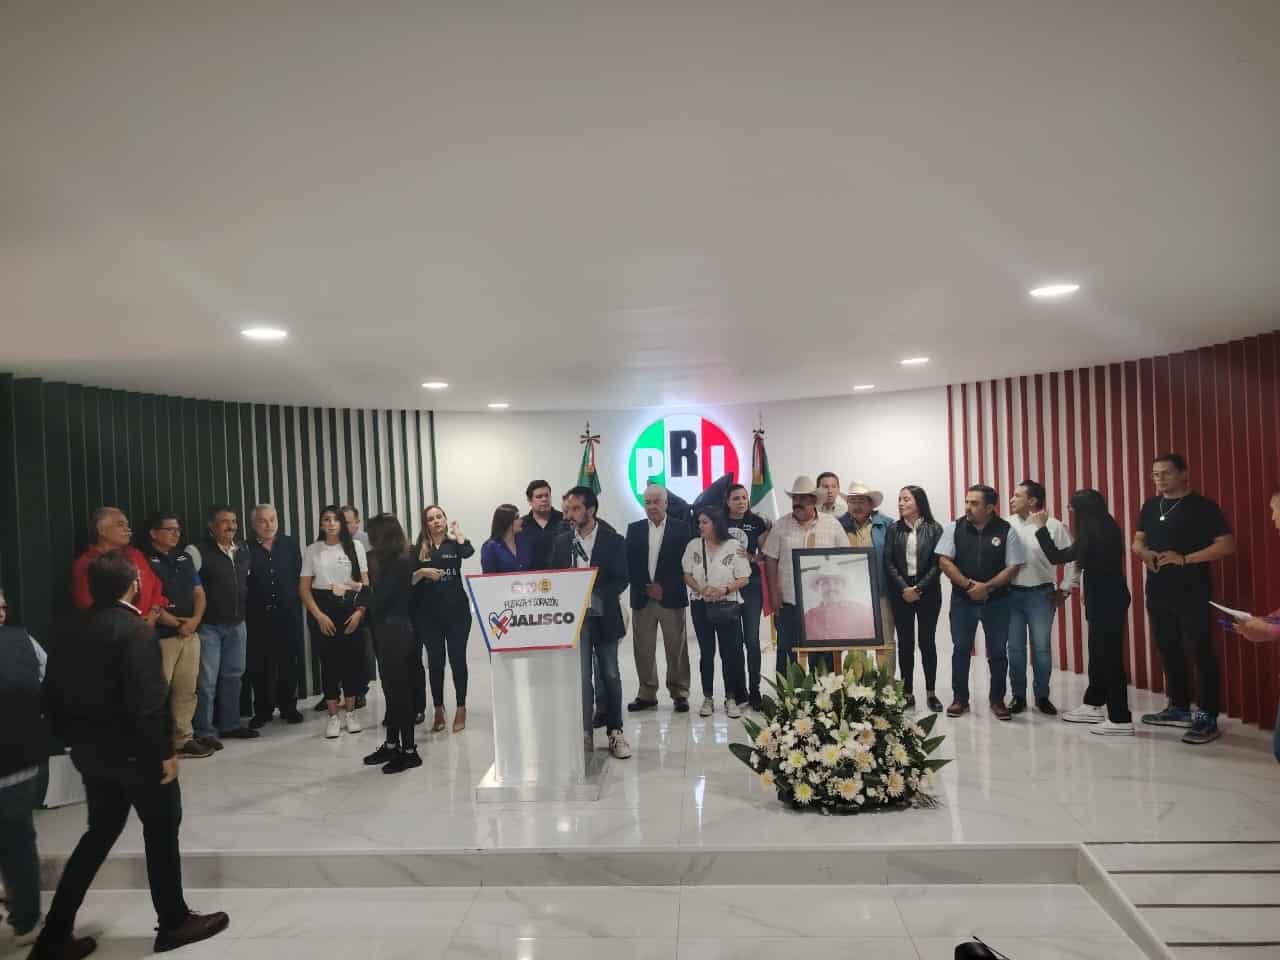 Había amenazas contra alcalde de Pihuamo: PRI; el Gobierno de Jalisco lamenta politización del hecho